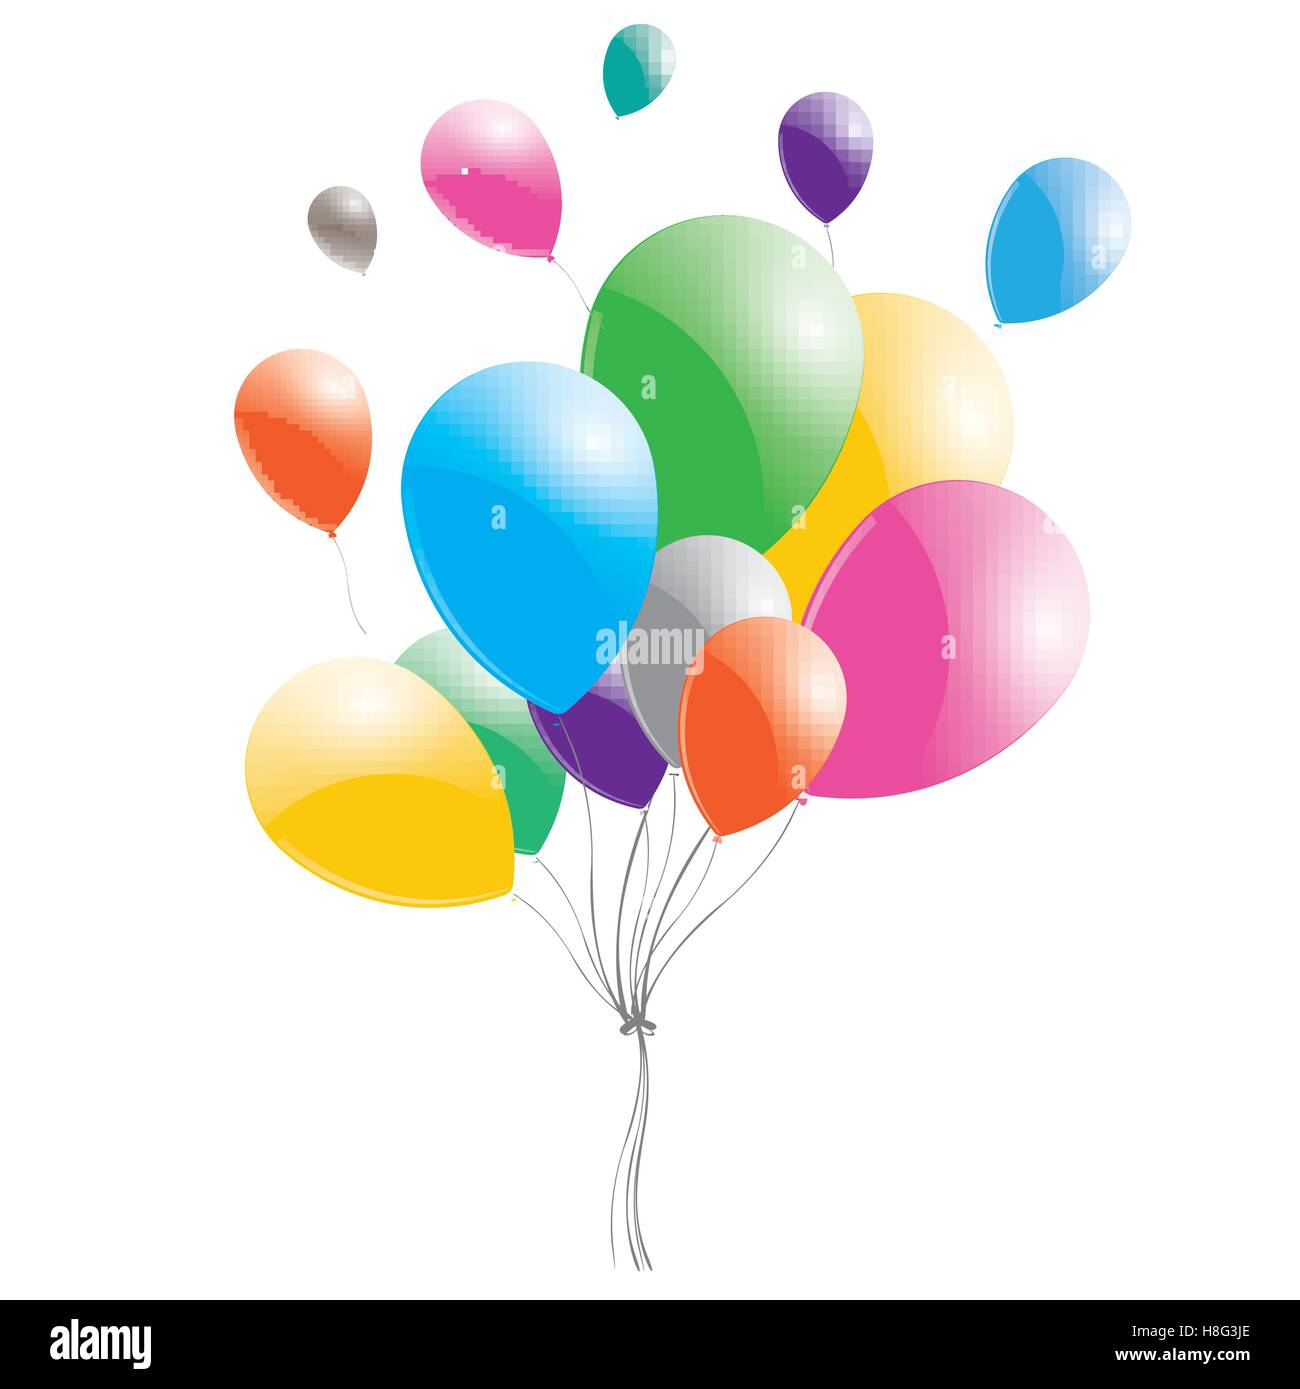 Fête ballon images vectorielles, Fête ballon vecteurs libres de